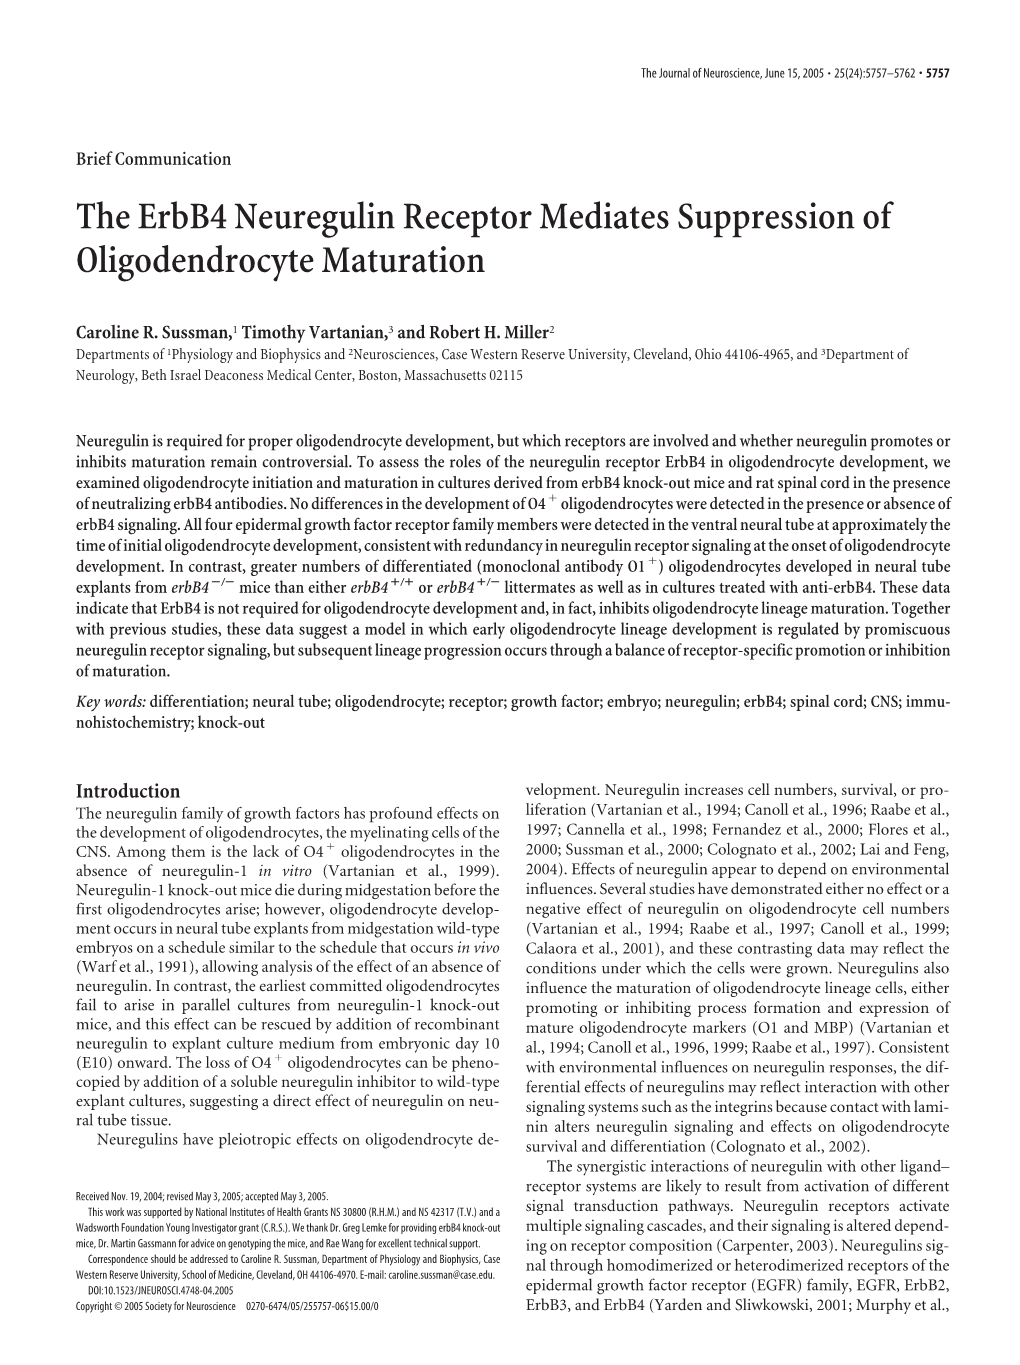 The Erbb4 Neuregulin Receptor Mediates Suppression of Oligodendrocyte Maturation